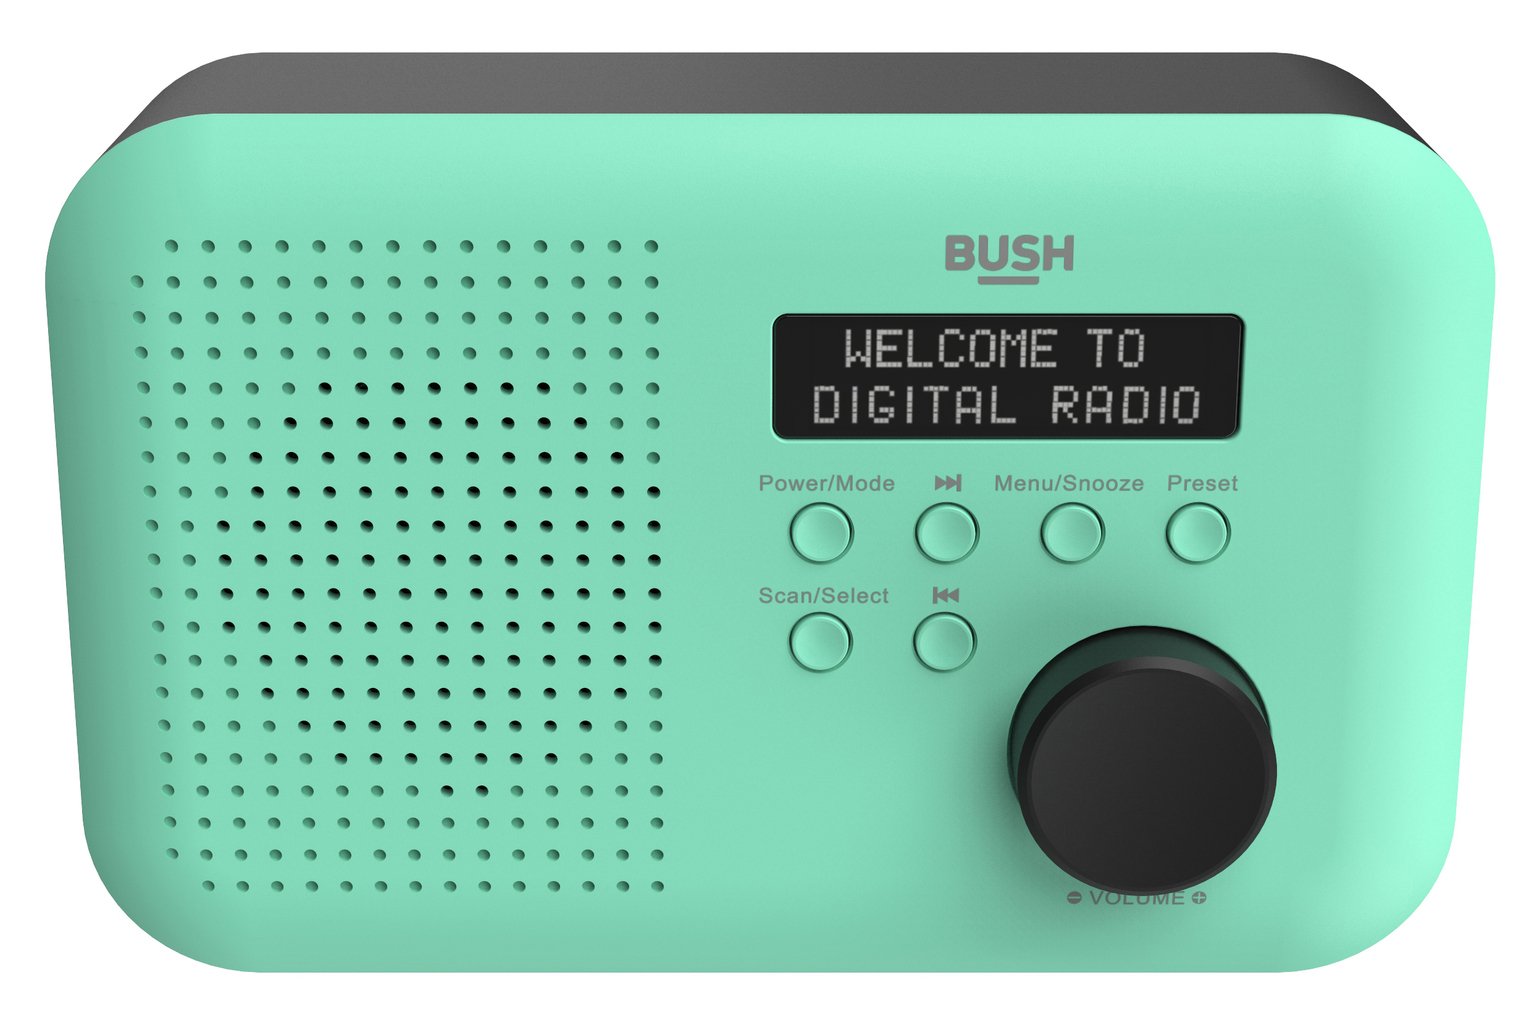 Bush Portable Mono DAB Radio Review